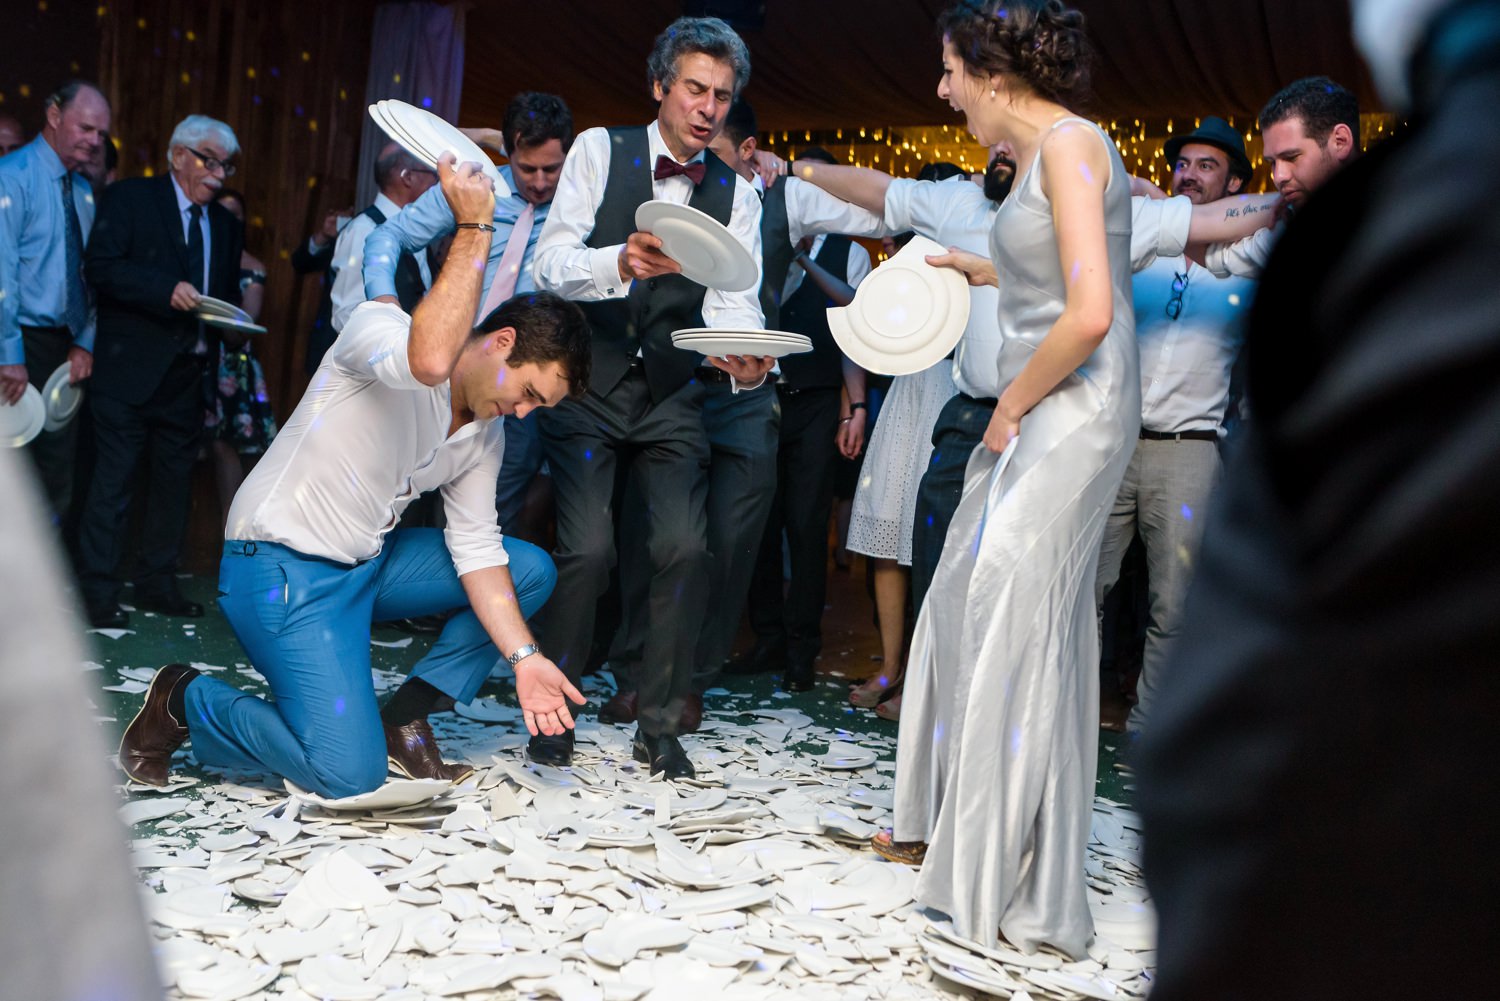 plate smashing at greek wedding